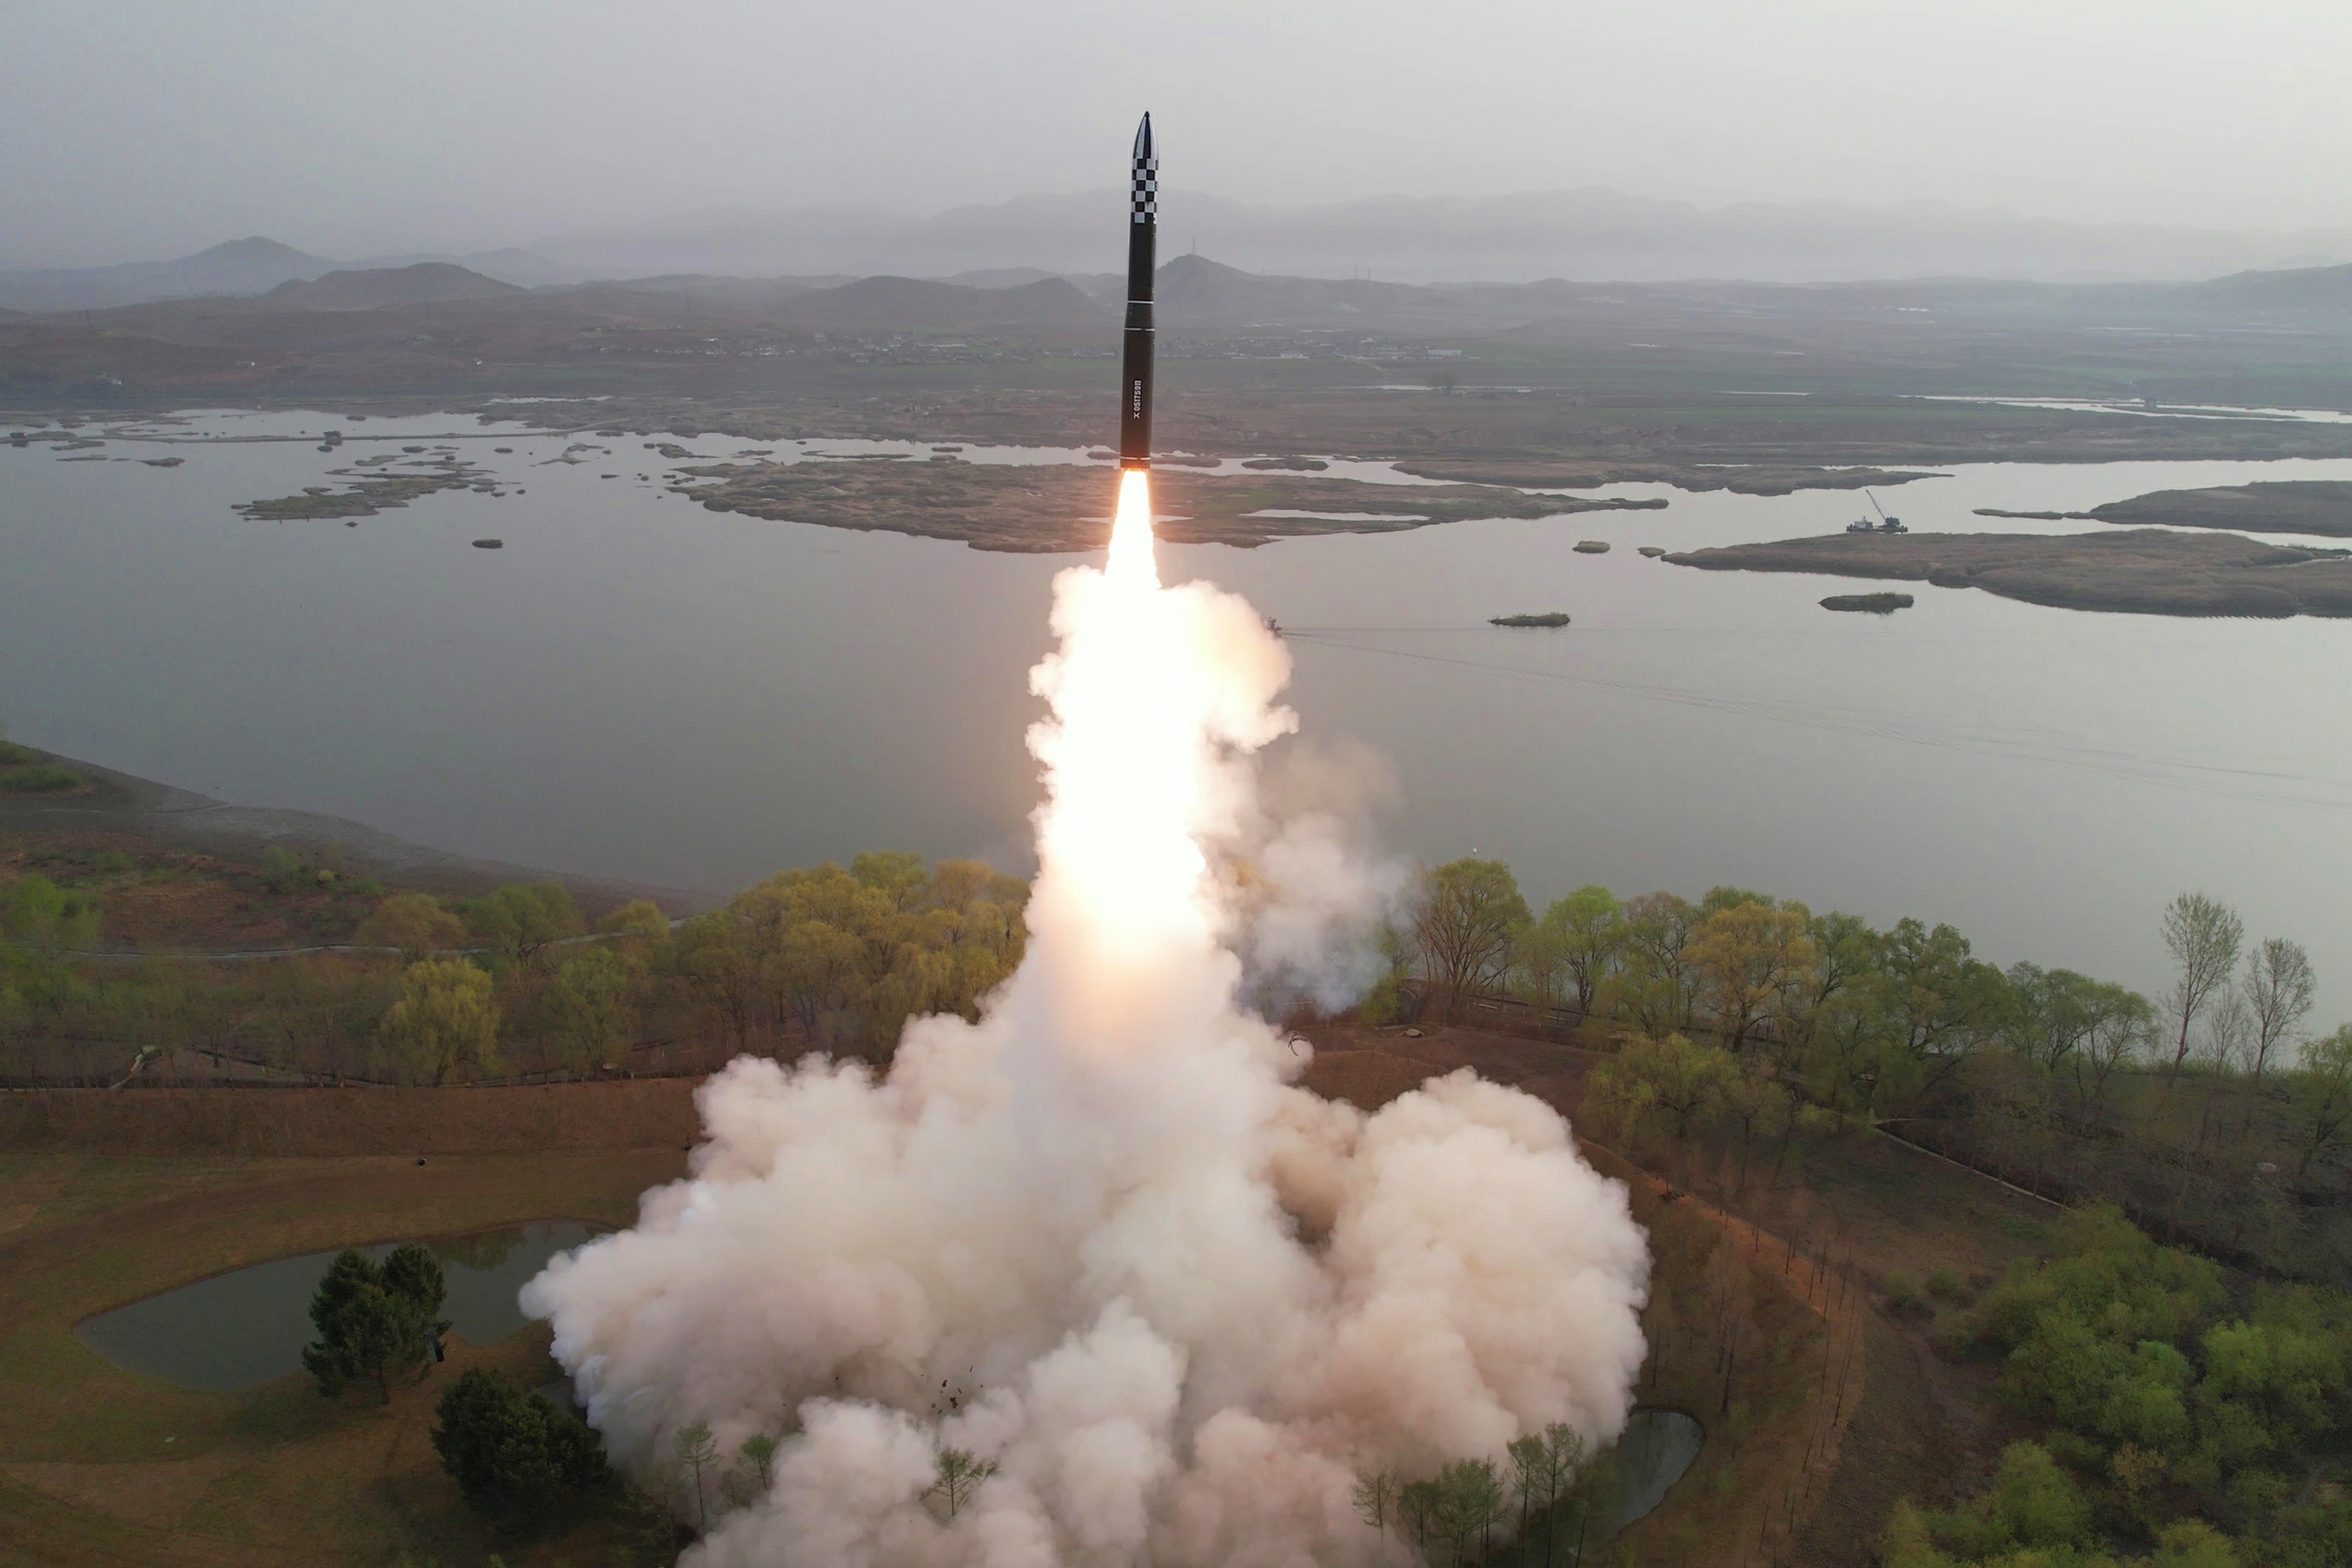 북한은 지난 4월 13일 김정은 노동당 총비서 지도 하에 고체연료를 사용한 새로운 대륙간탄도미사일(ICBM) ‘화성포-18형(화성-18형)’을 발사했다고 14일 당 기관지 노동신문이 보도했다. 신문은 이 미사일이 “공화국 전략무력의 전망적인 핵심주력수단으로, 중대한 전쟁억제력의 사명을 수행”하게 된다고 밝혔다.  뉴스1